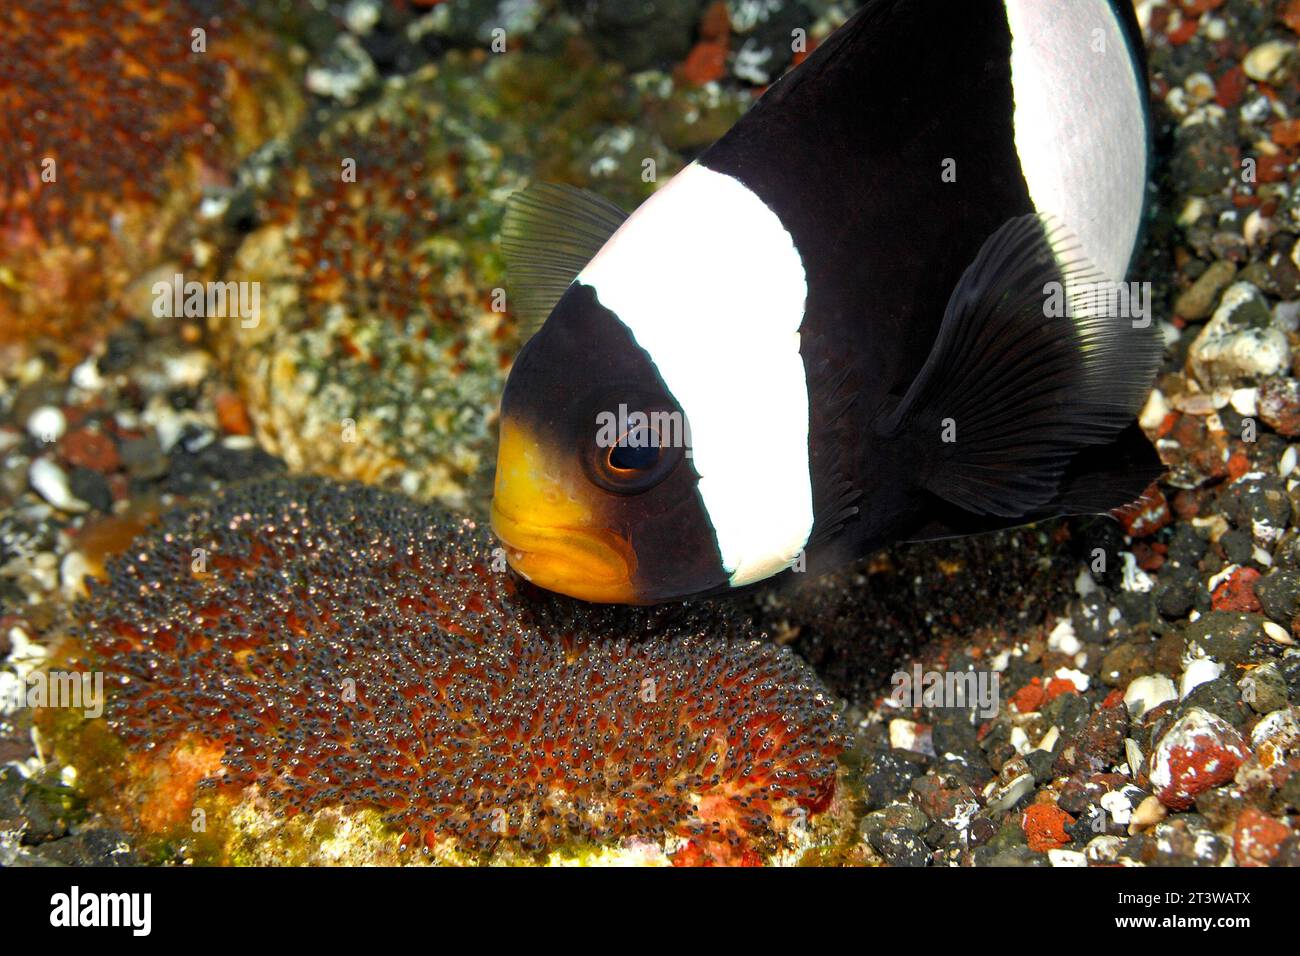 Pesce nemonepedico sellato, polimno di Amphiprion, adulto che protegge le uova sulla roccia accanto all'anemone del mare di Haddon, Stichodactyla haddoni. Occhi in via di sviluppo visti Foto Stock